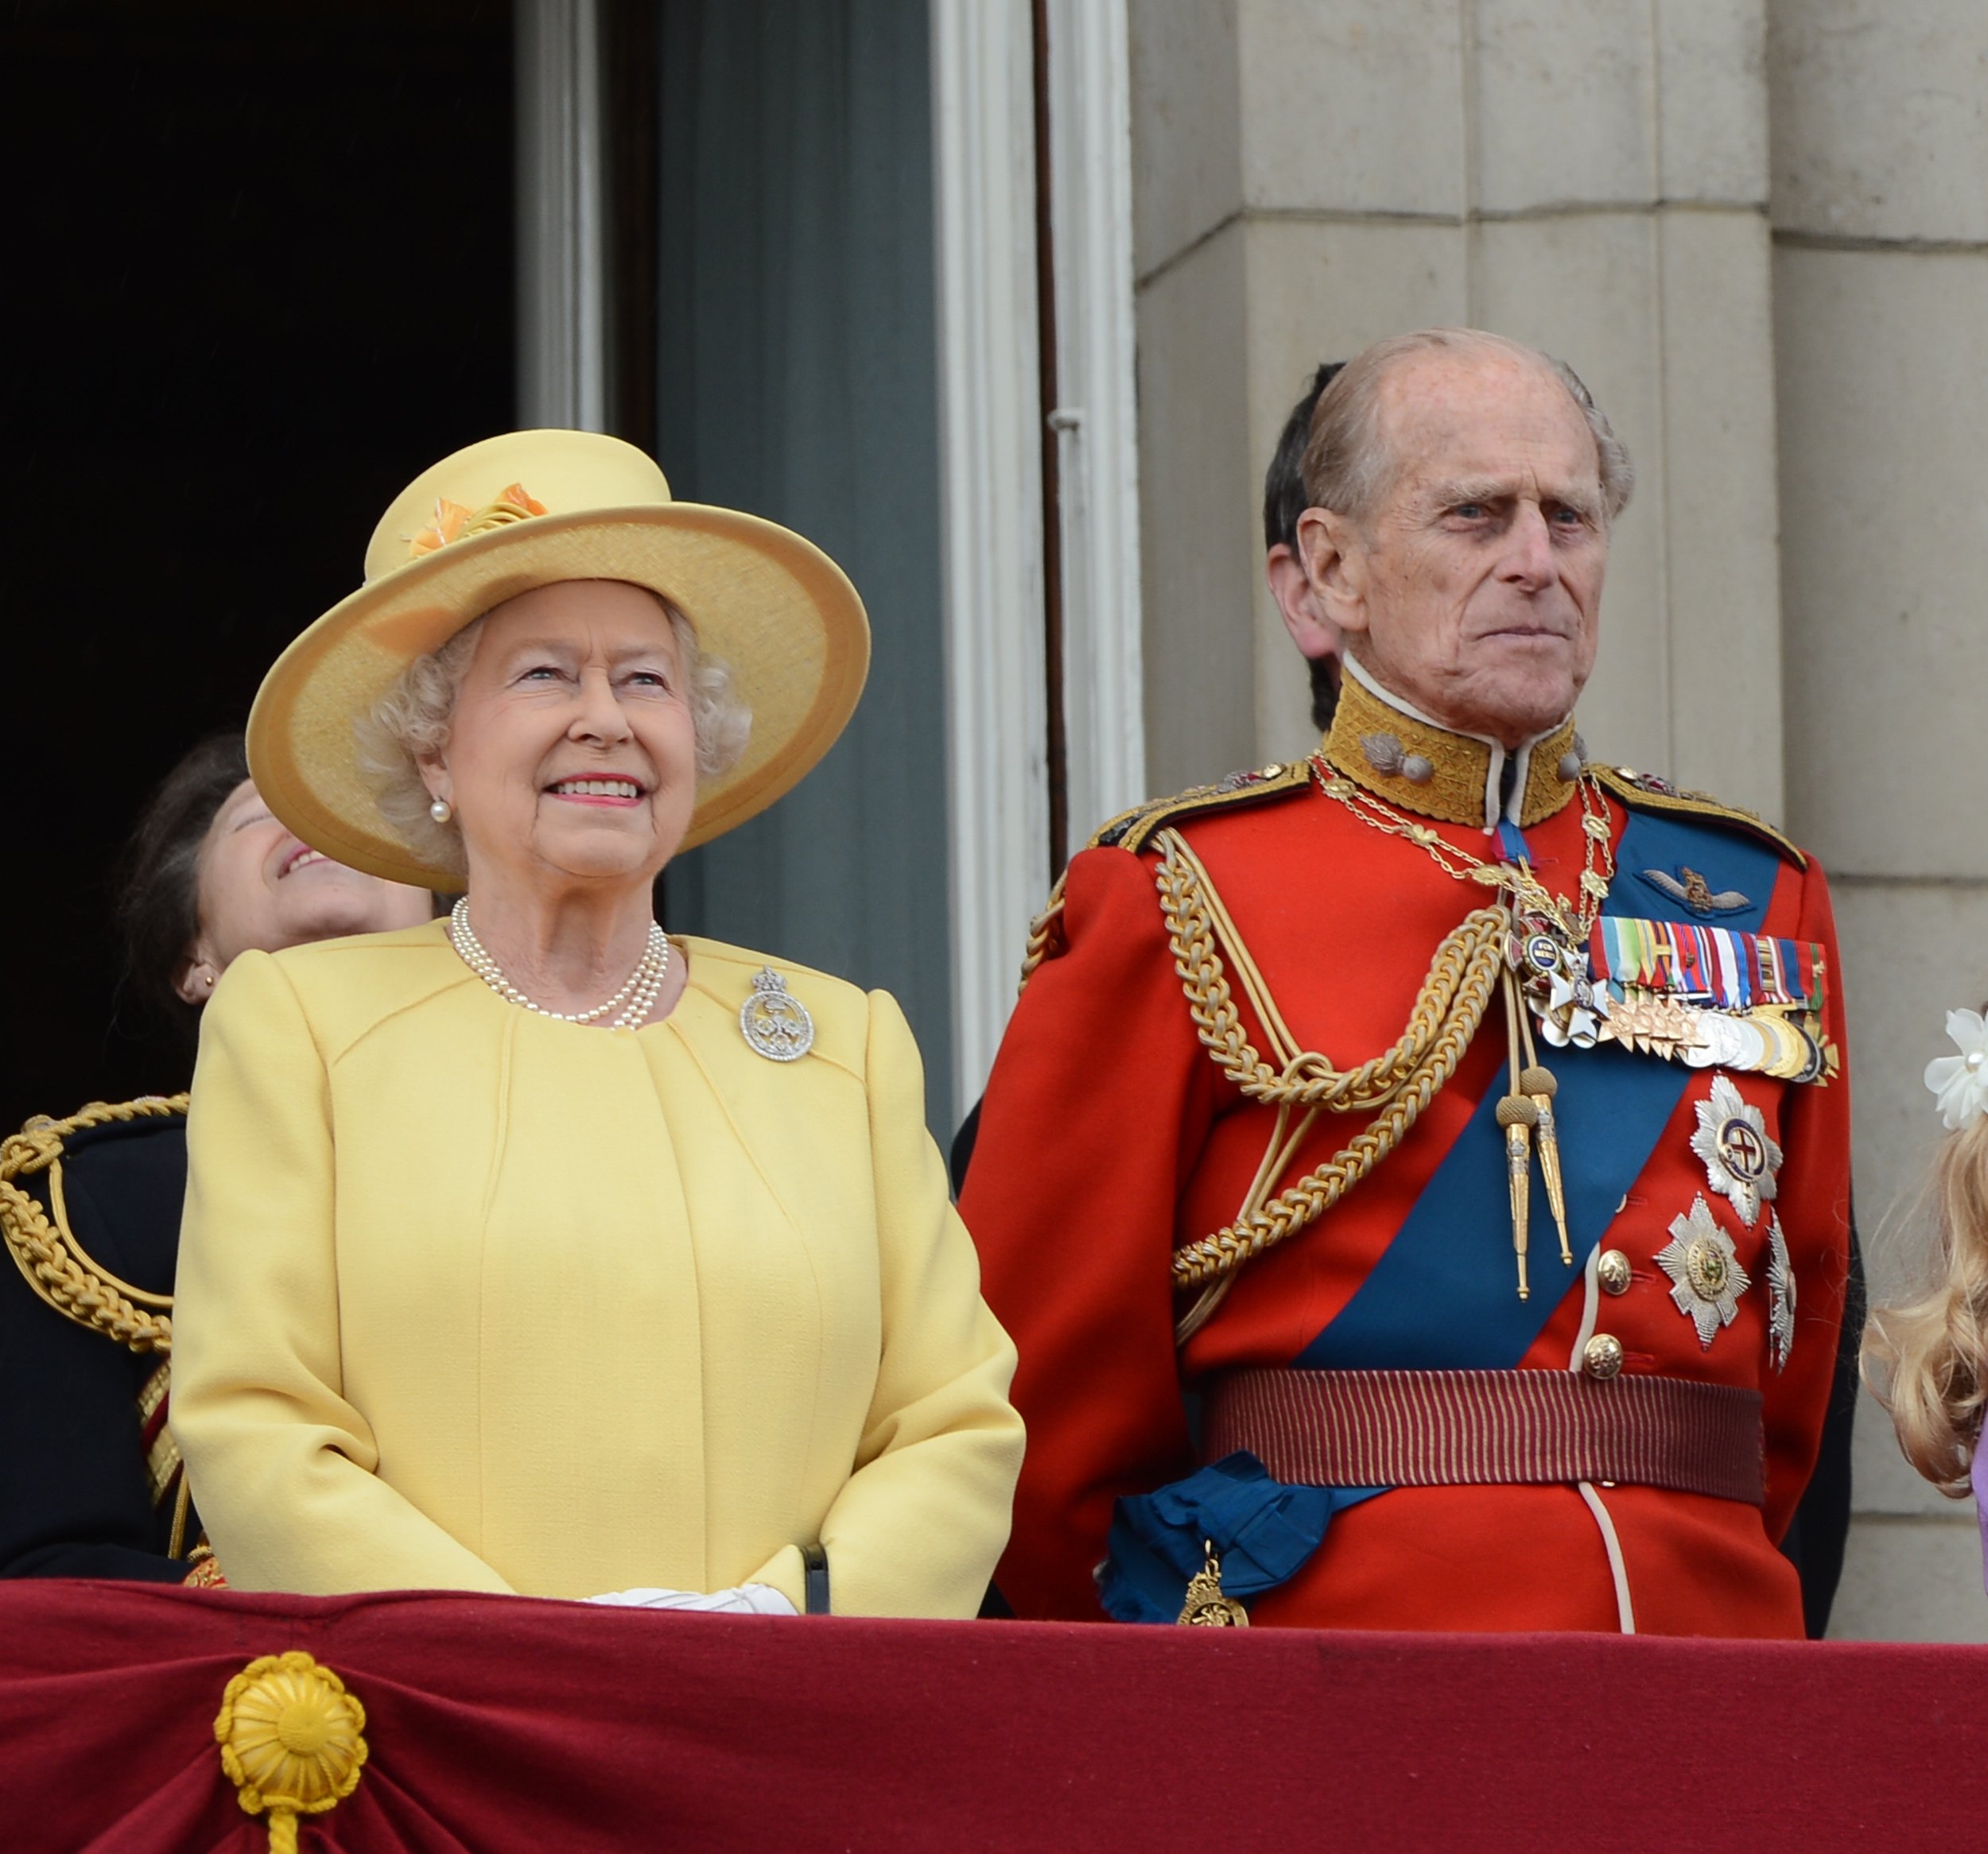 Königin Elizabeth II. und der Herzog von Edinburgh nehmen am 16. Juni 2012 an der Trooping Of The Colour bei der Horse Guards Parade in London teil. | Quelle: Shutterstock